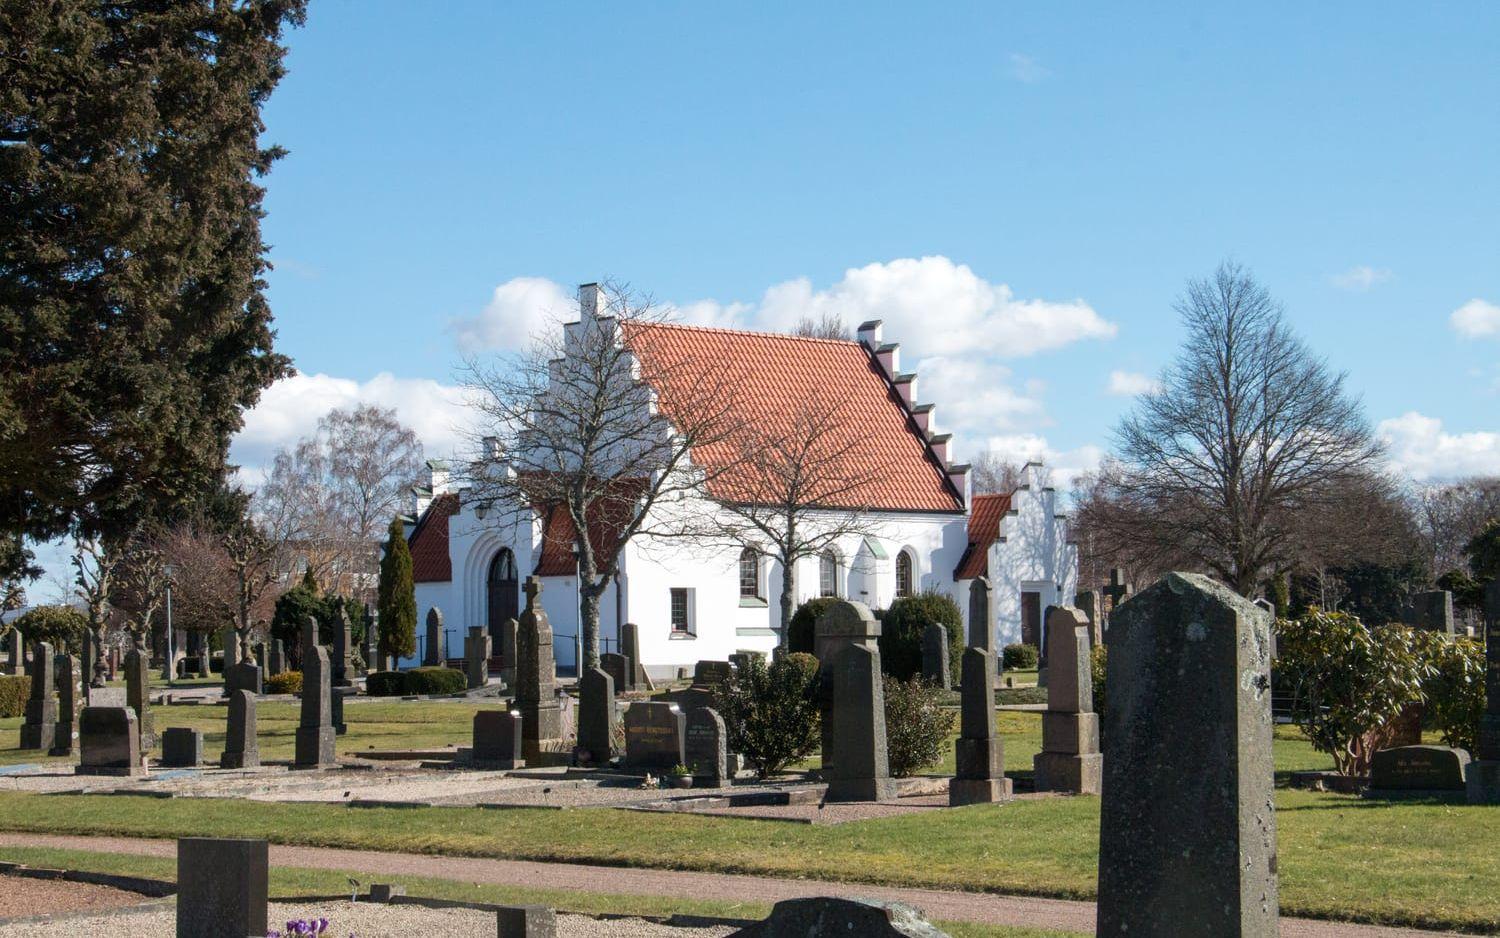 Kapellet används vid begravningsceremonier och ligger mitt inne på Laholms kyrkogård.